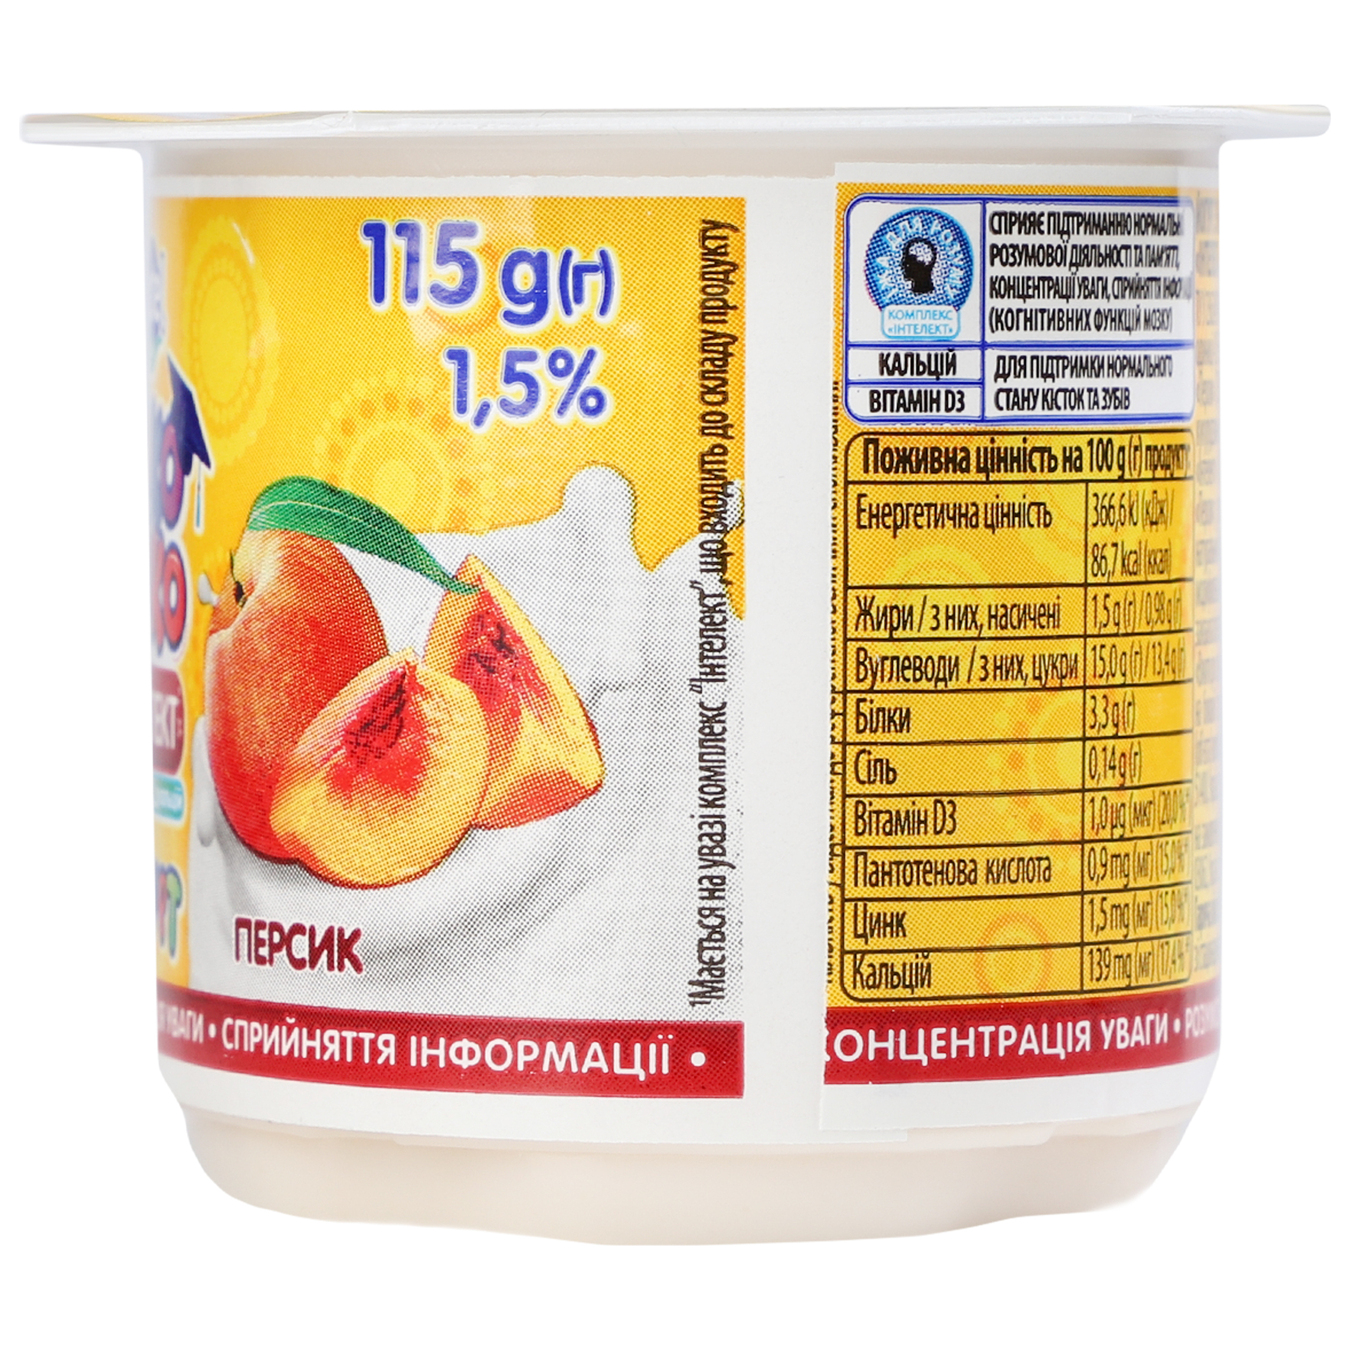 Йогурт Lactel Локо Моко Персик 1,5% 115г 3